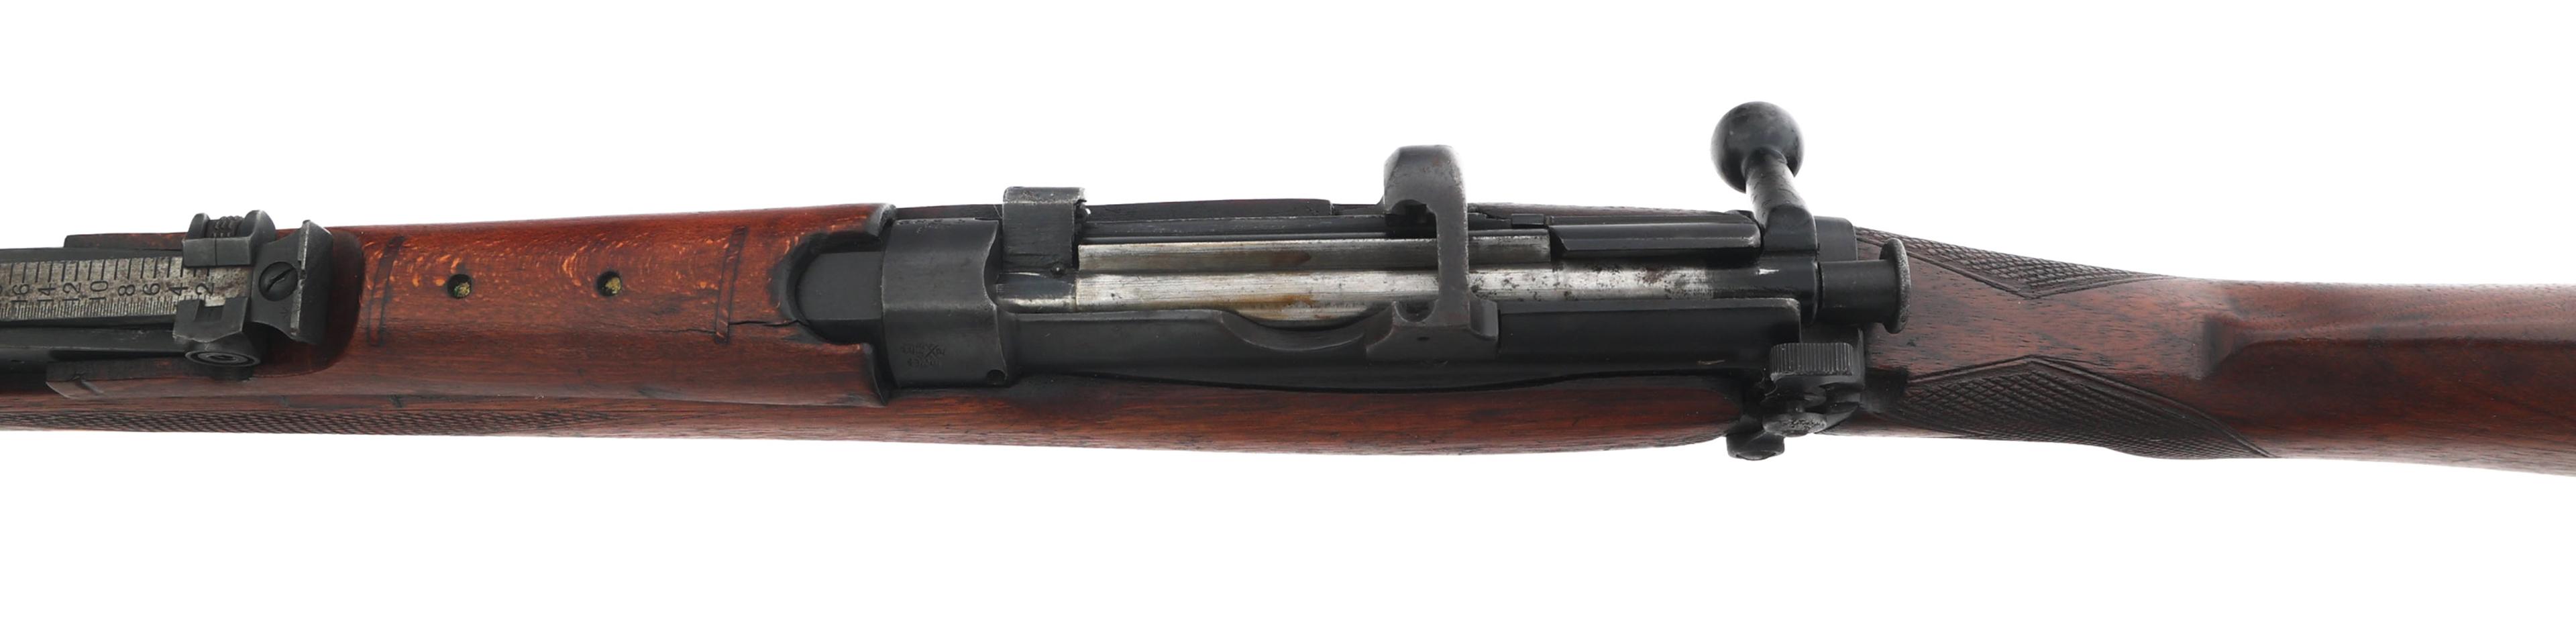 SPORTERIZED M1918 ENFIELD ShtLE III* .303 RIFLE